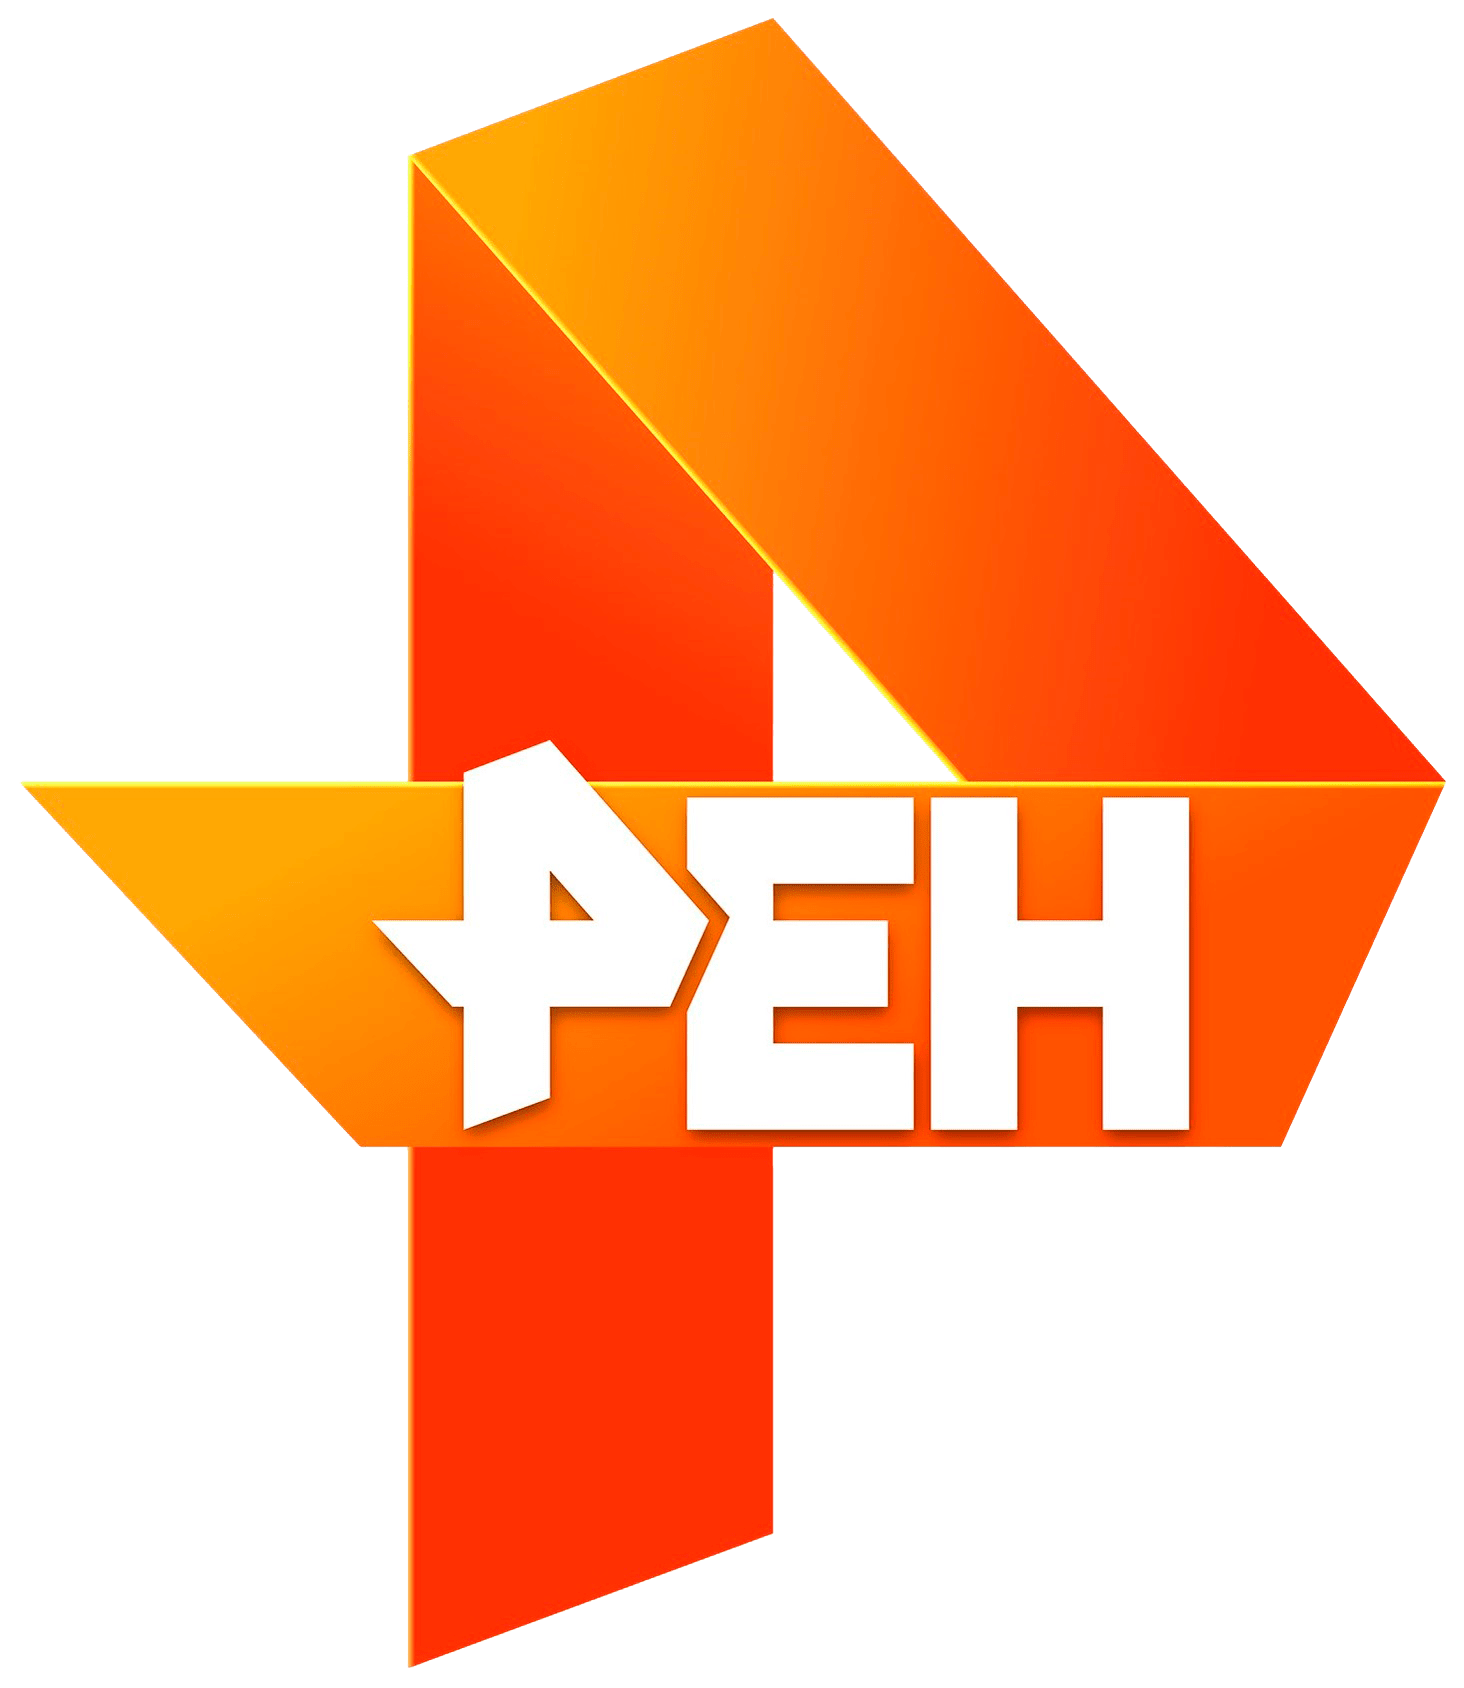 Раземщение рекламы РЕН ТВ, г.Кемерово